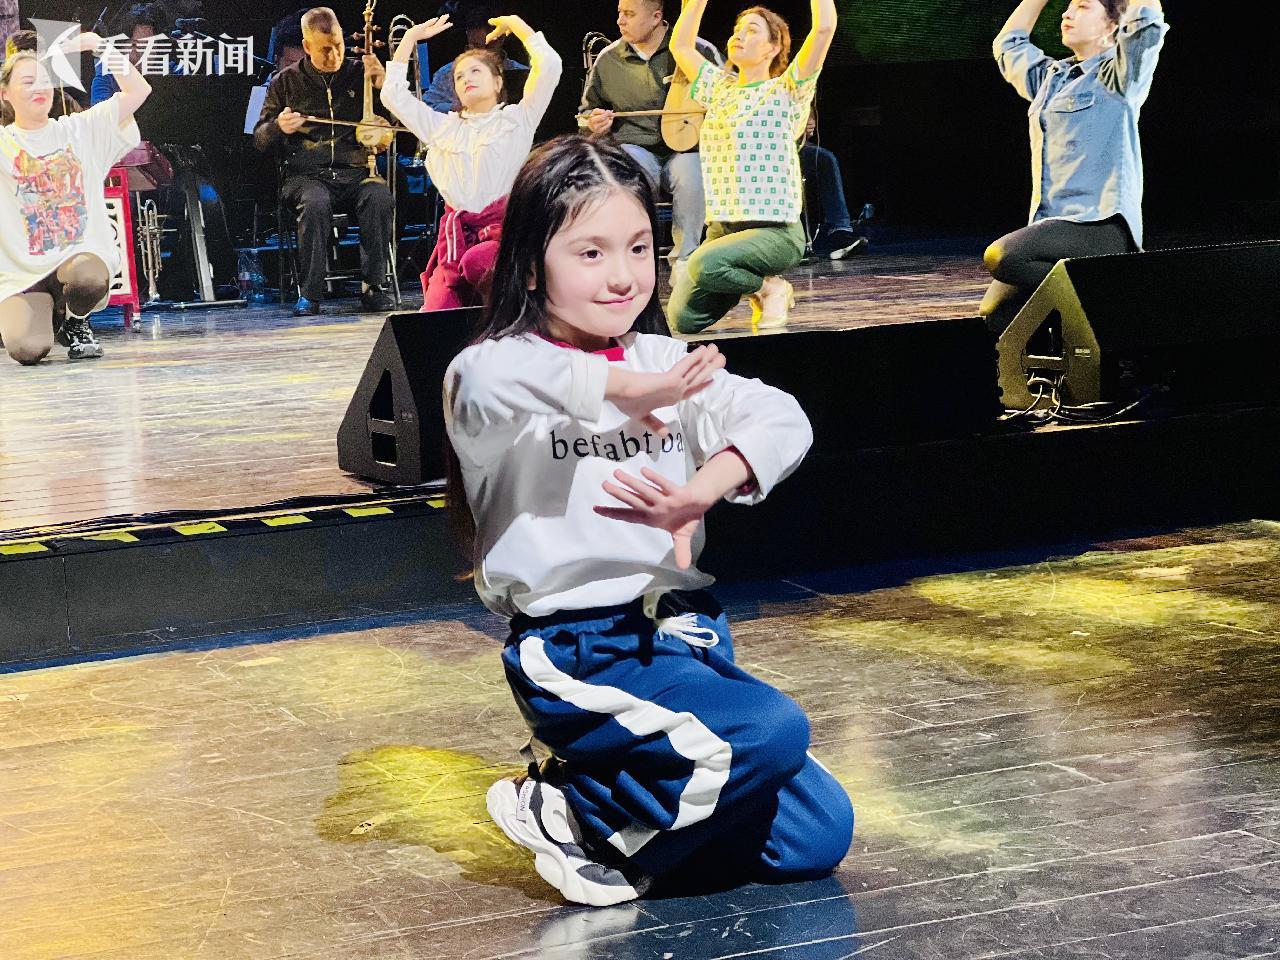 表演者正是来自新疆莎车县的6岁女孩古丽娜孜·阿力木江,身着一套轻便